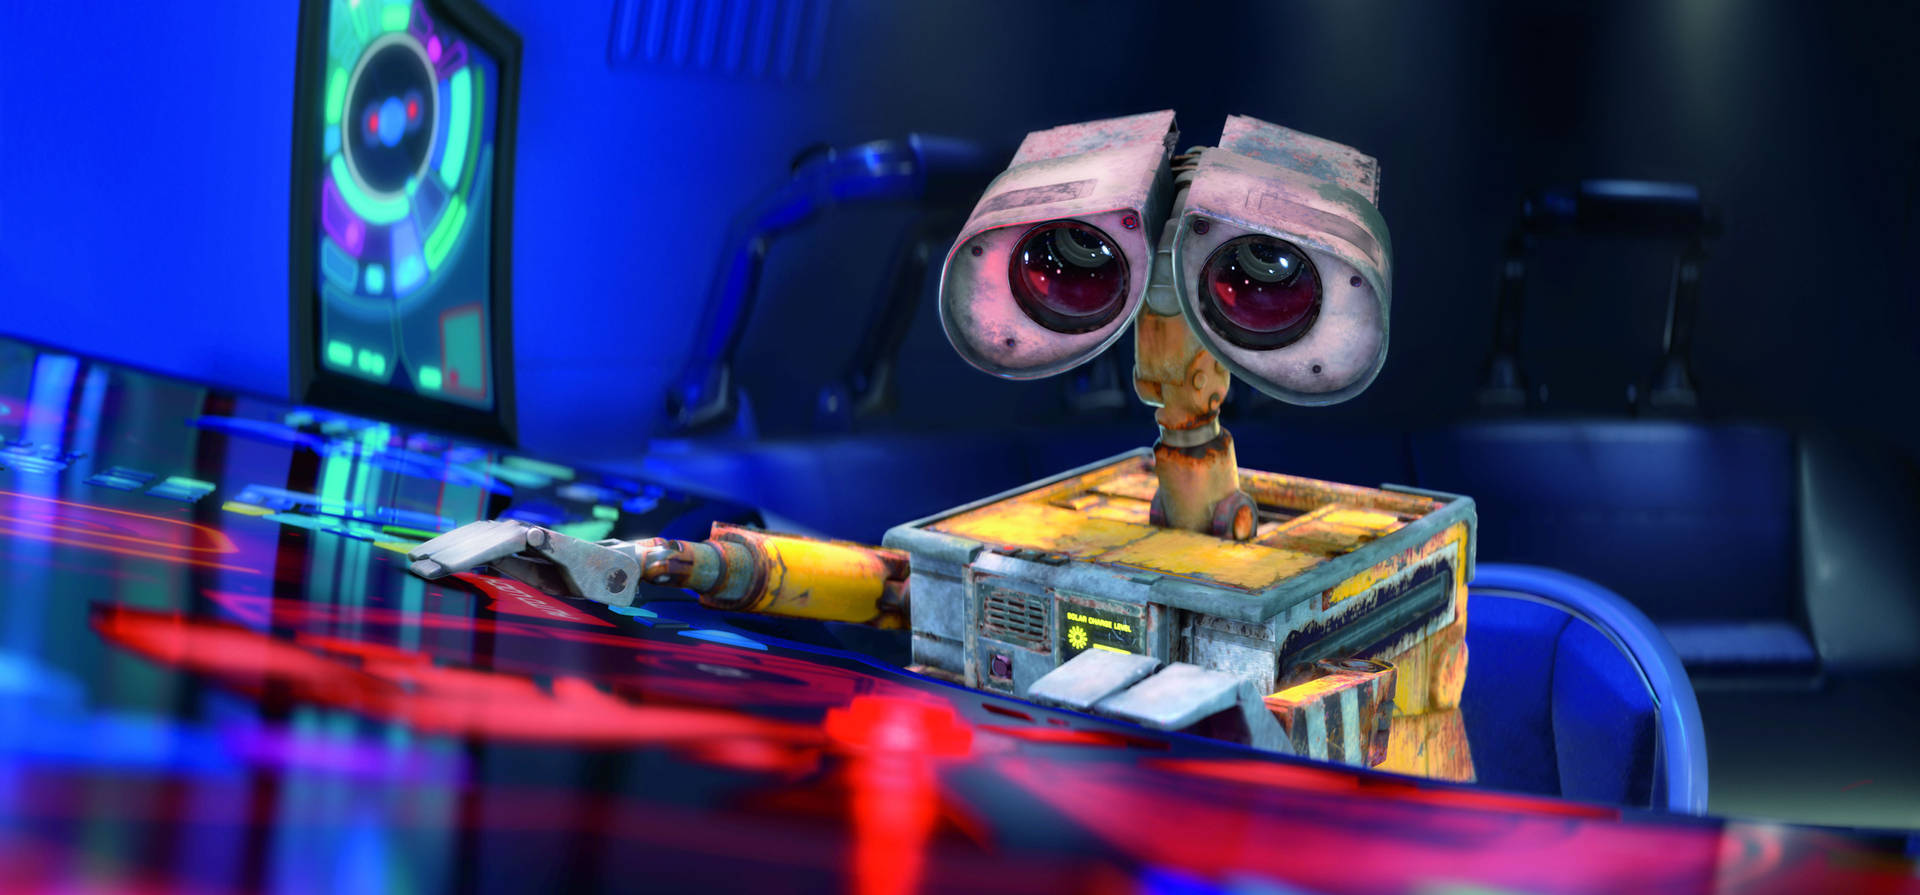 Axiom Computer WALL E Wallpaper